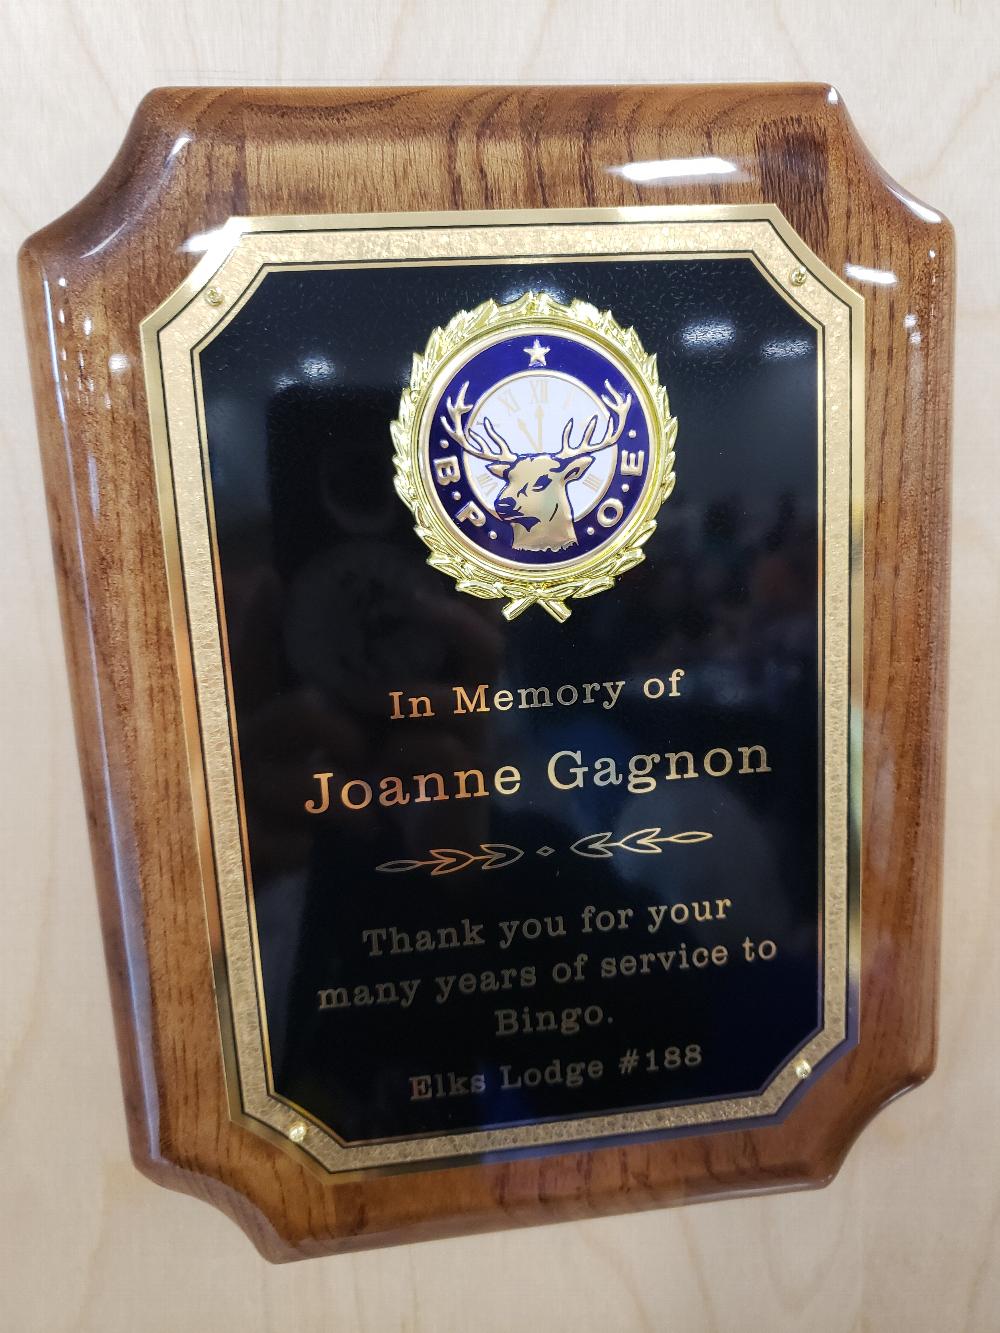 Plaque Presentation - November 5, 2019 - In Memory of Joanne Gagnon